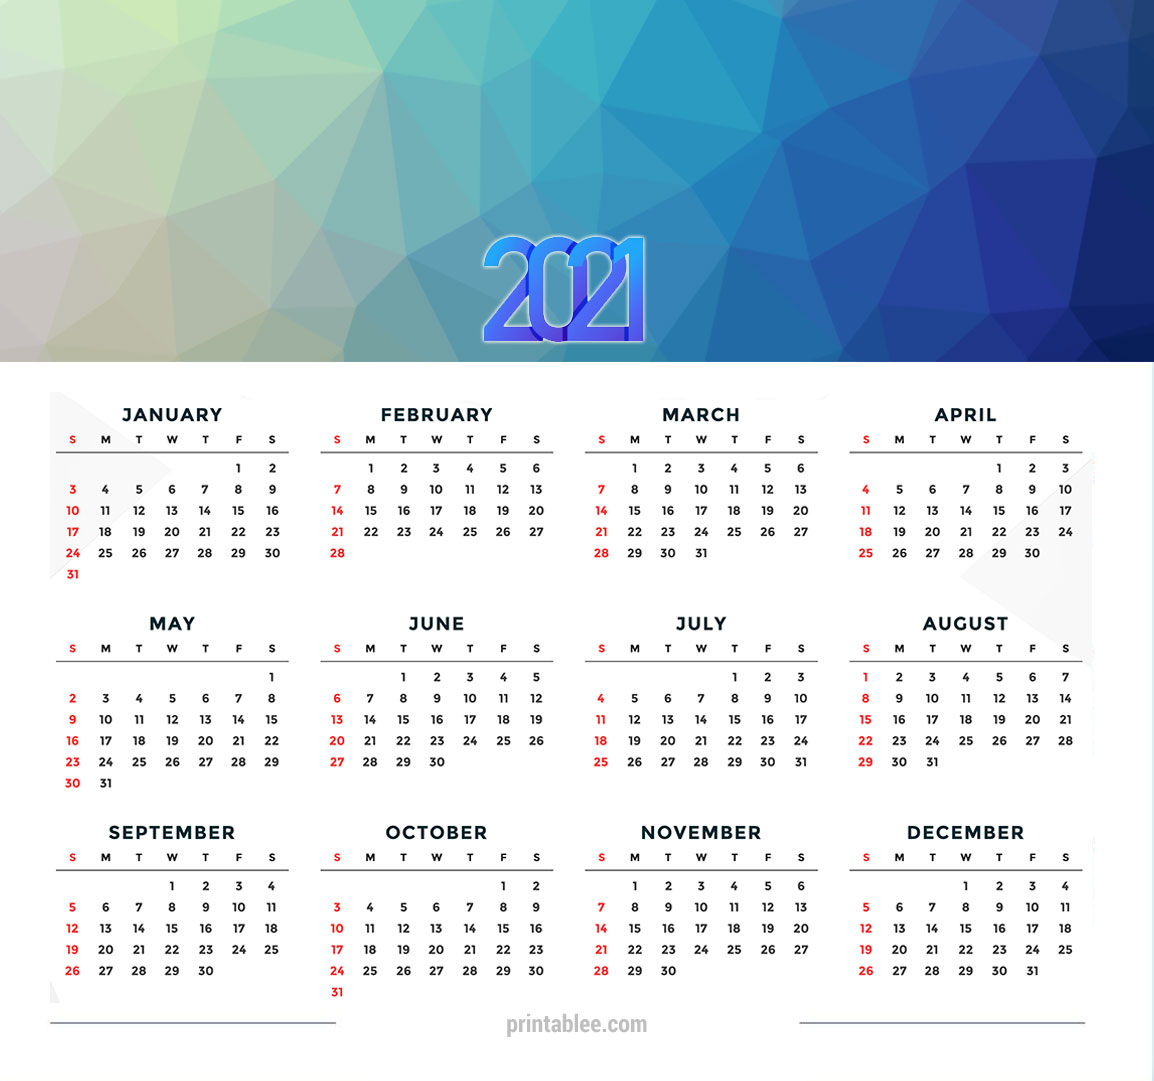 10 Best 2021 Calendar Printable Free - Printablee